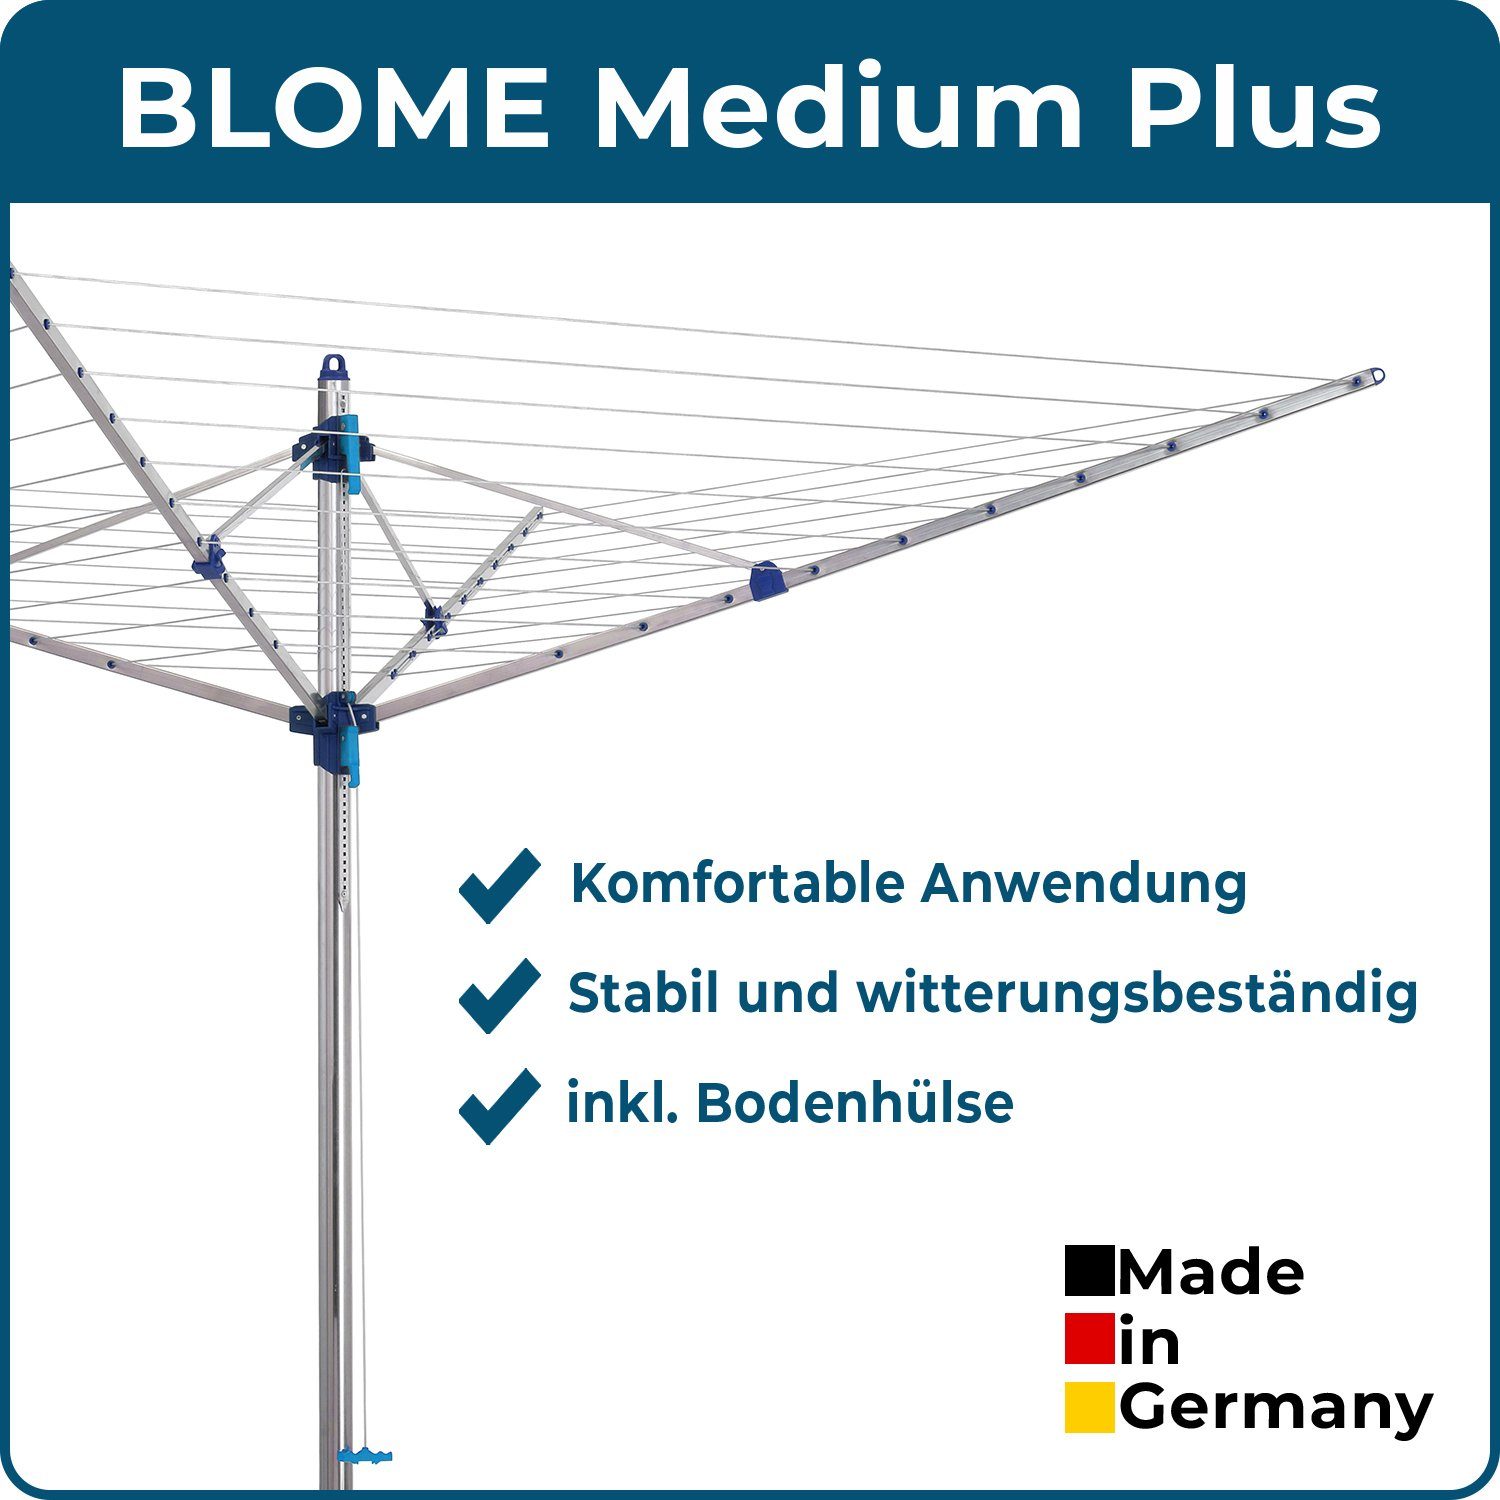 Blome Wäschespinne Medium Made Leine, Meter 60 Plus blau in Germany